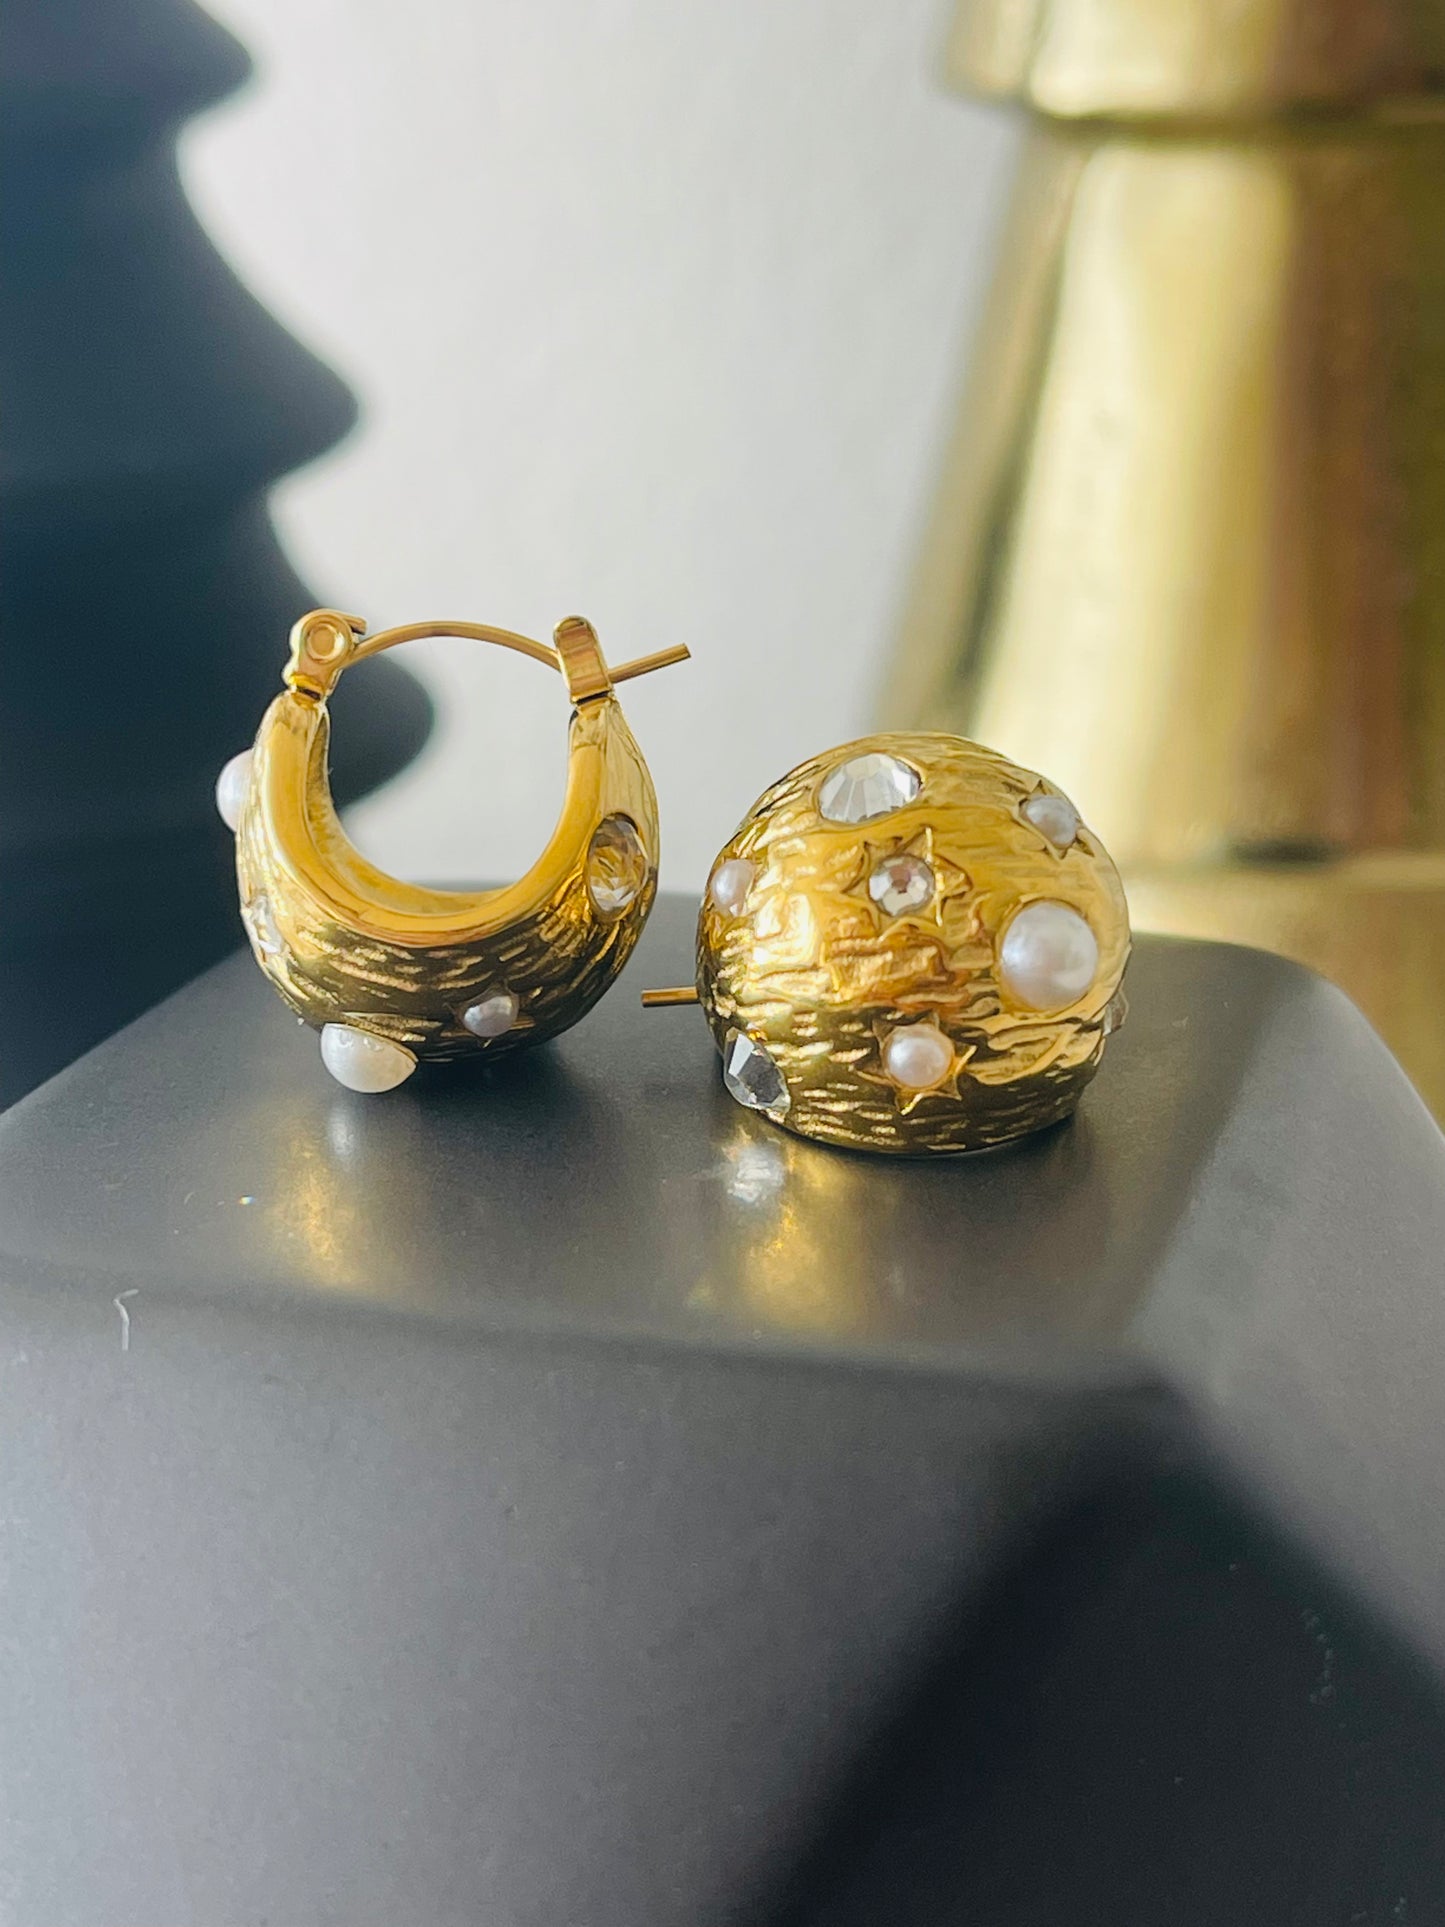 Mandarin earrings